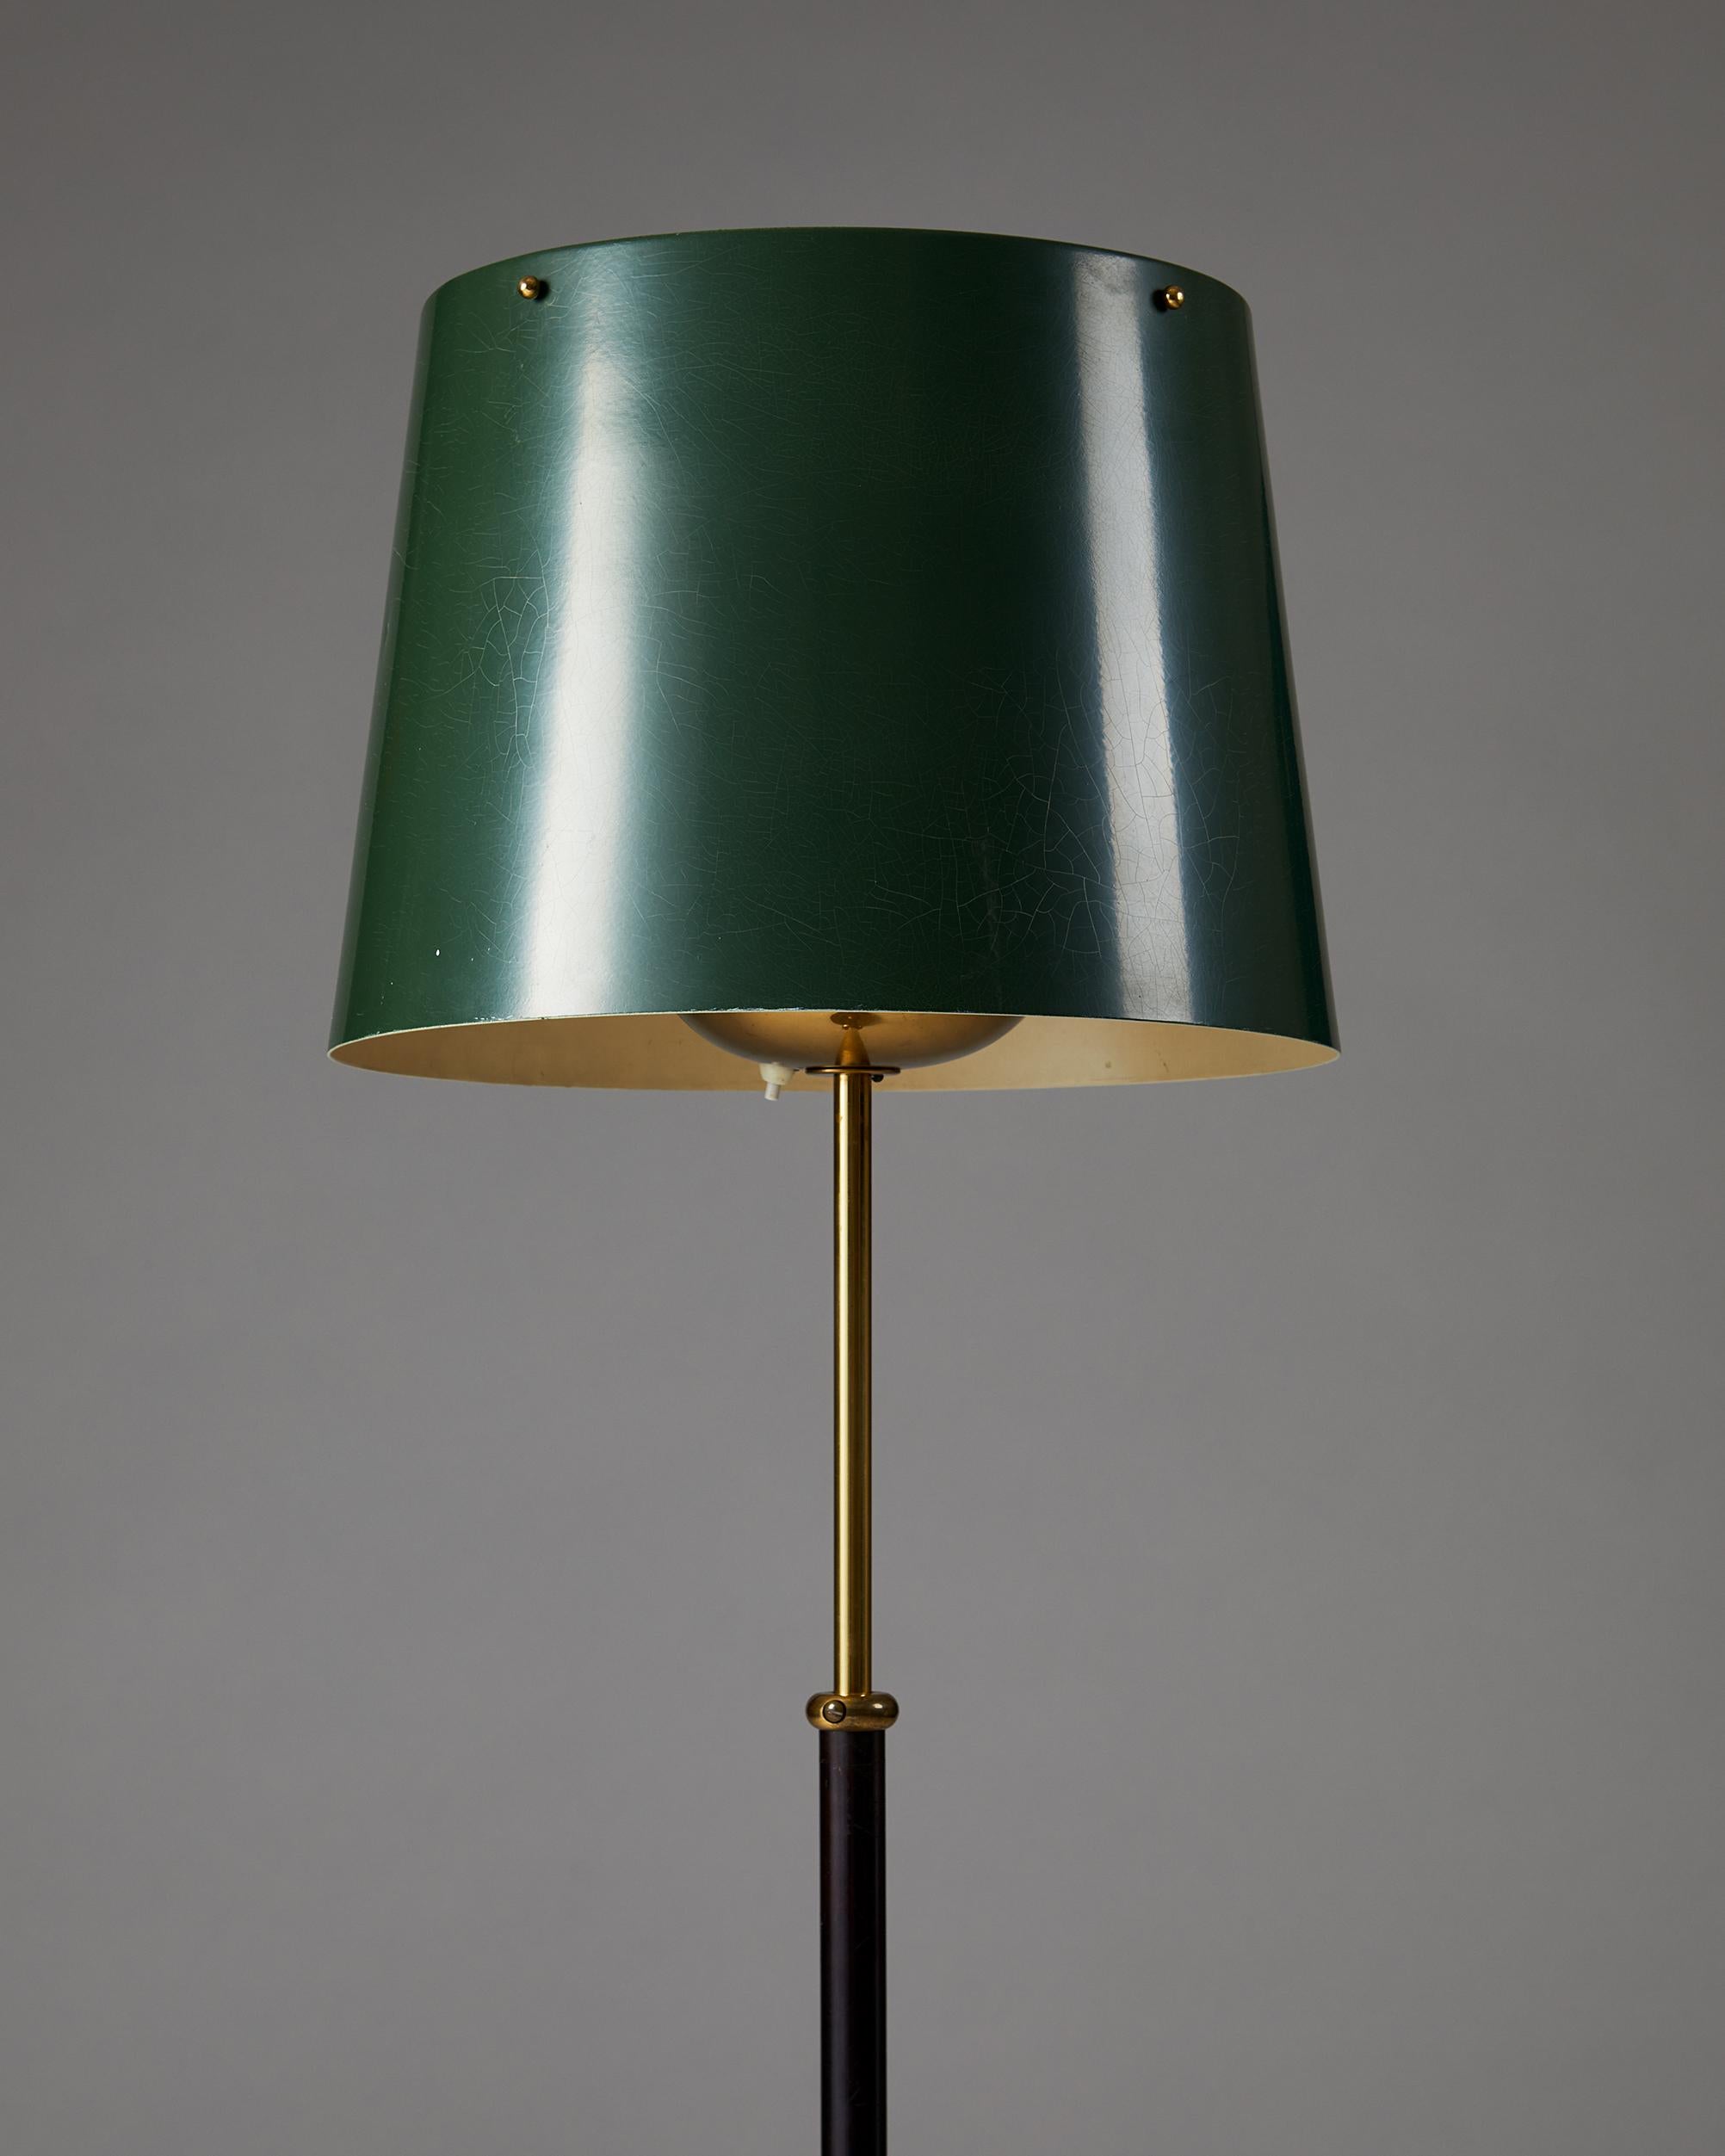 Mid-Century Modern Floor Lamp Model 2564 Designed by Josef Frank for Svenskt Tenn, Sweden, 1950’s